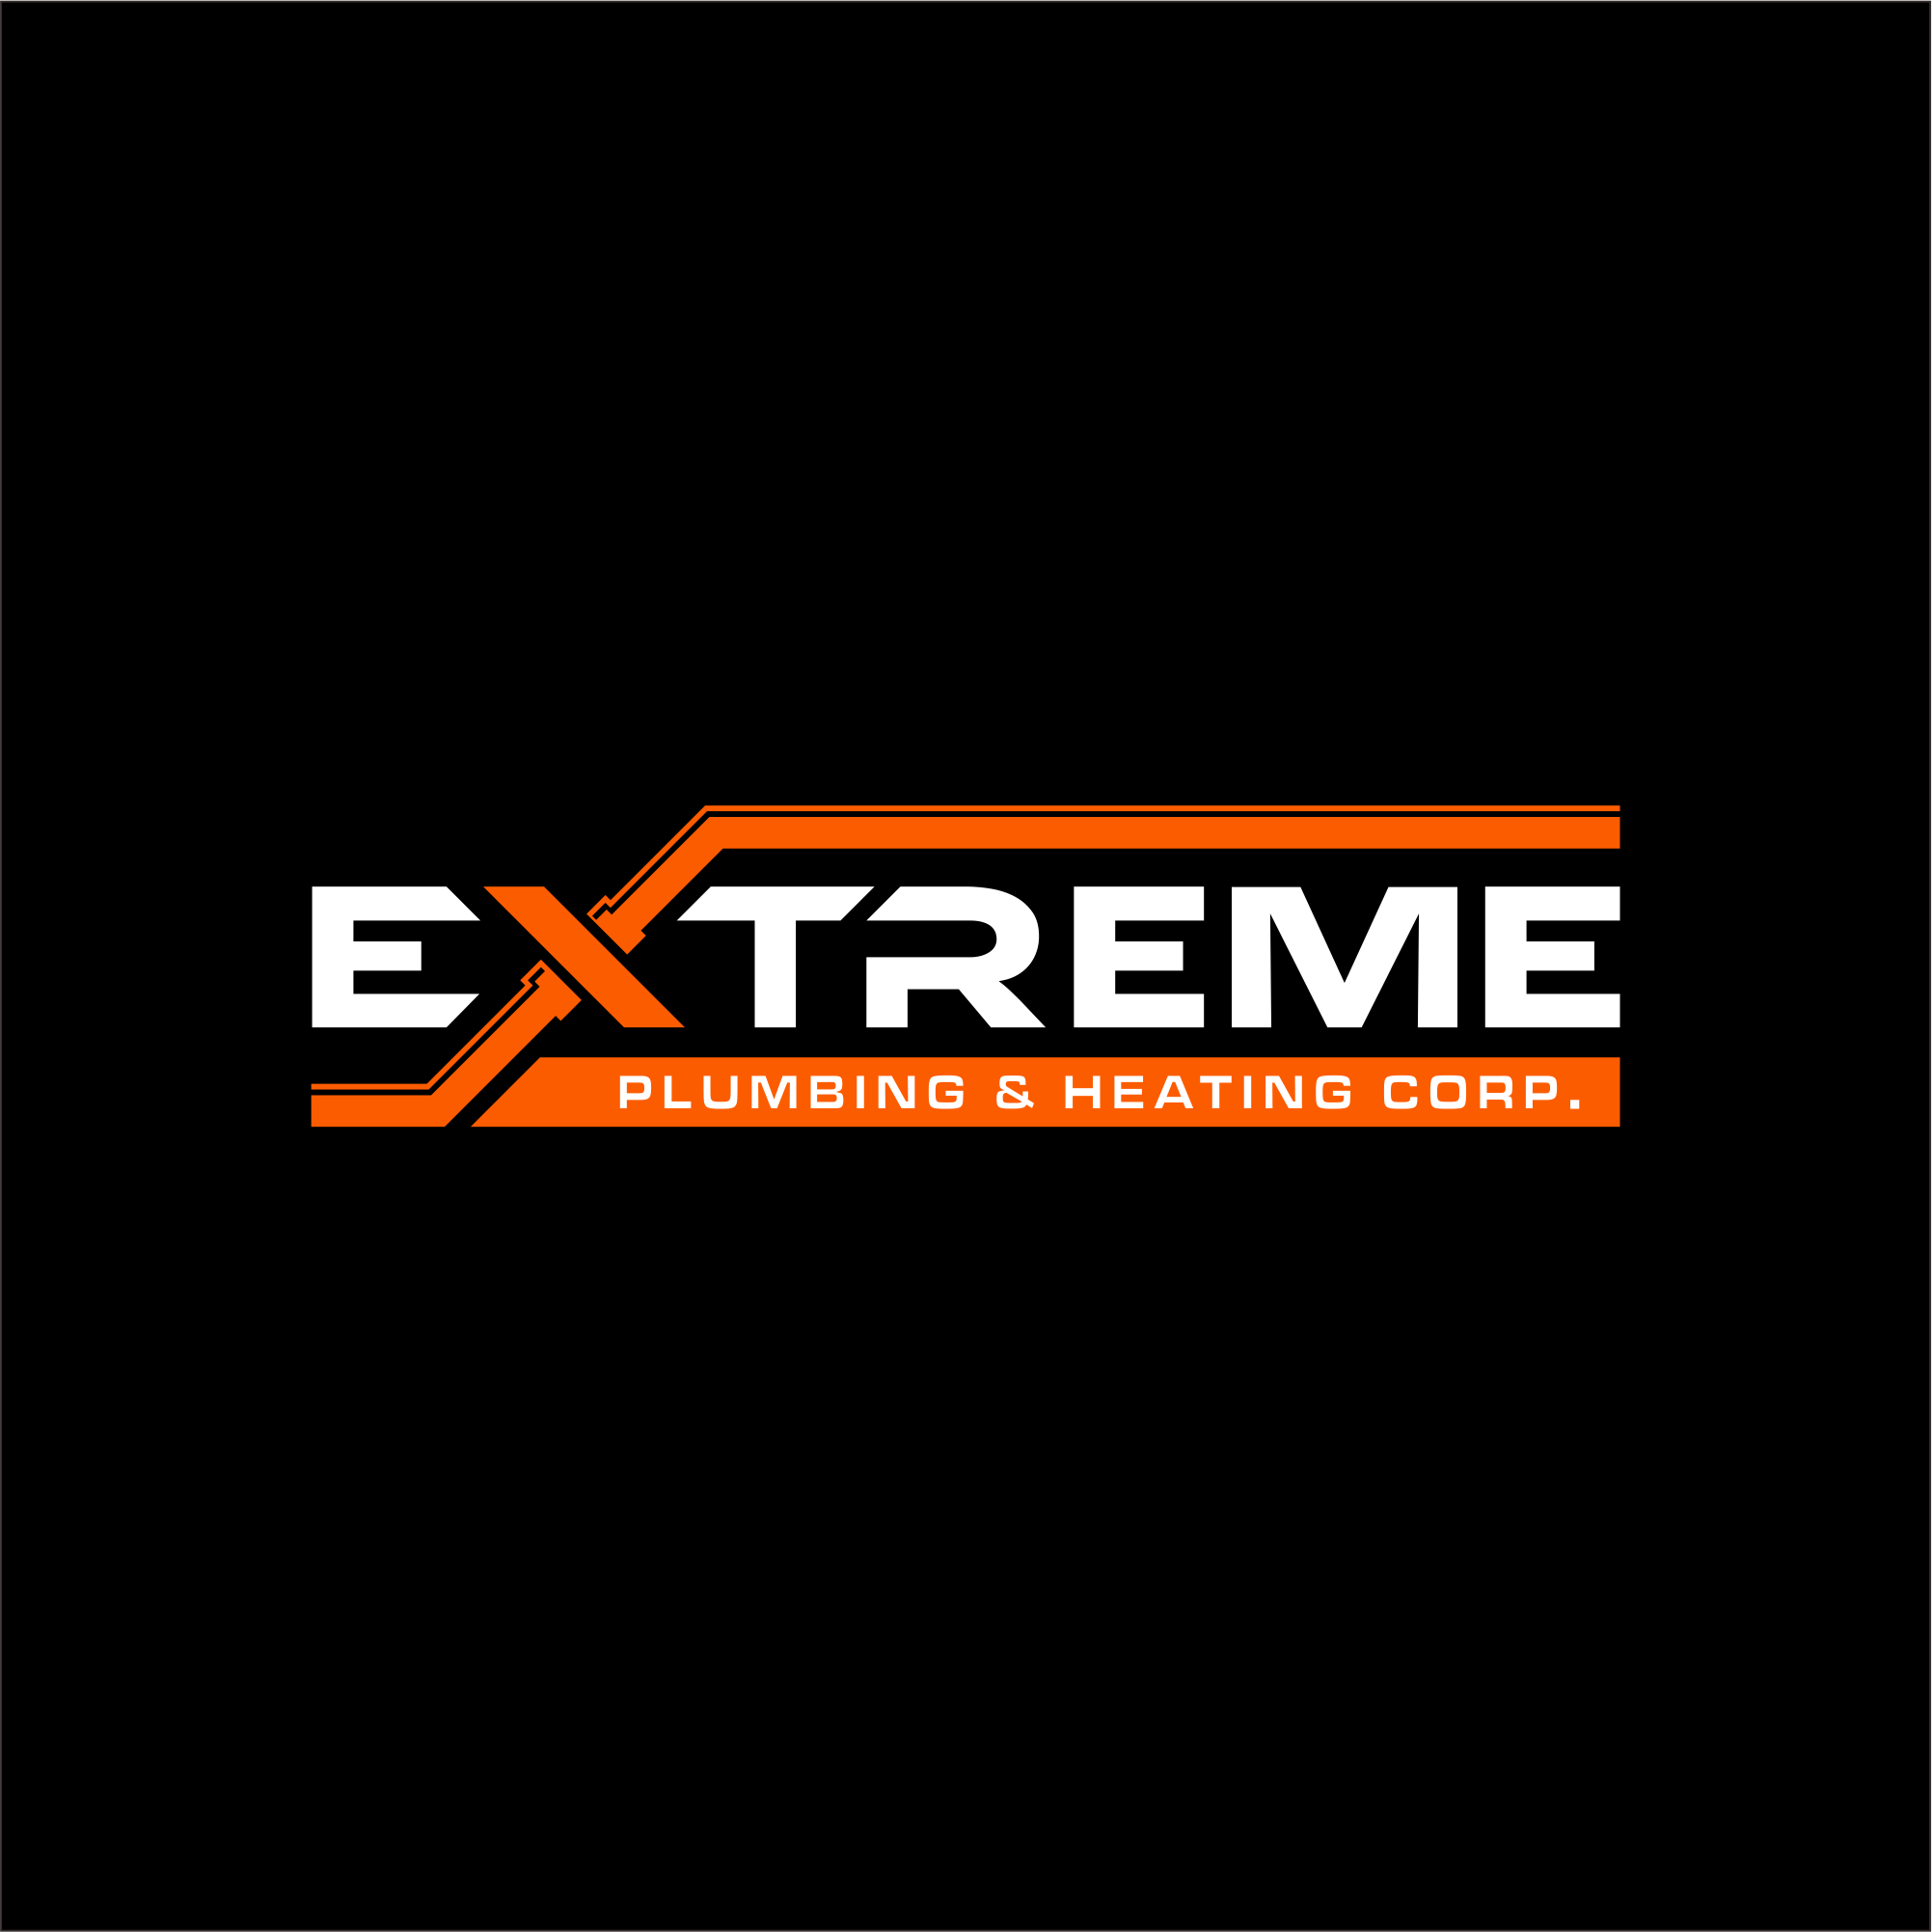 Extreme Plumbing & Heating Corp. Logo